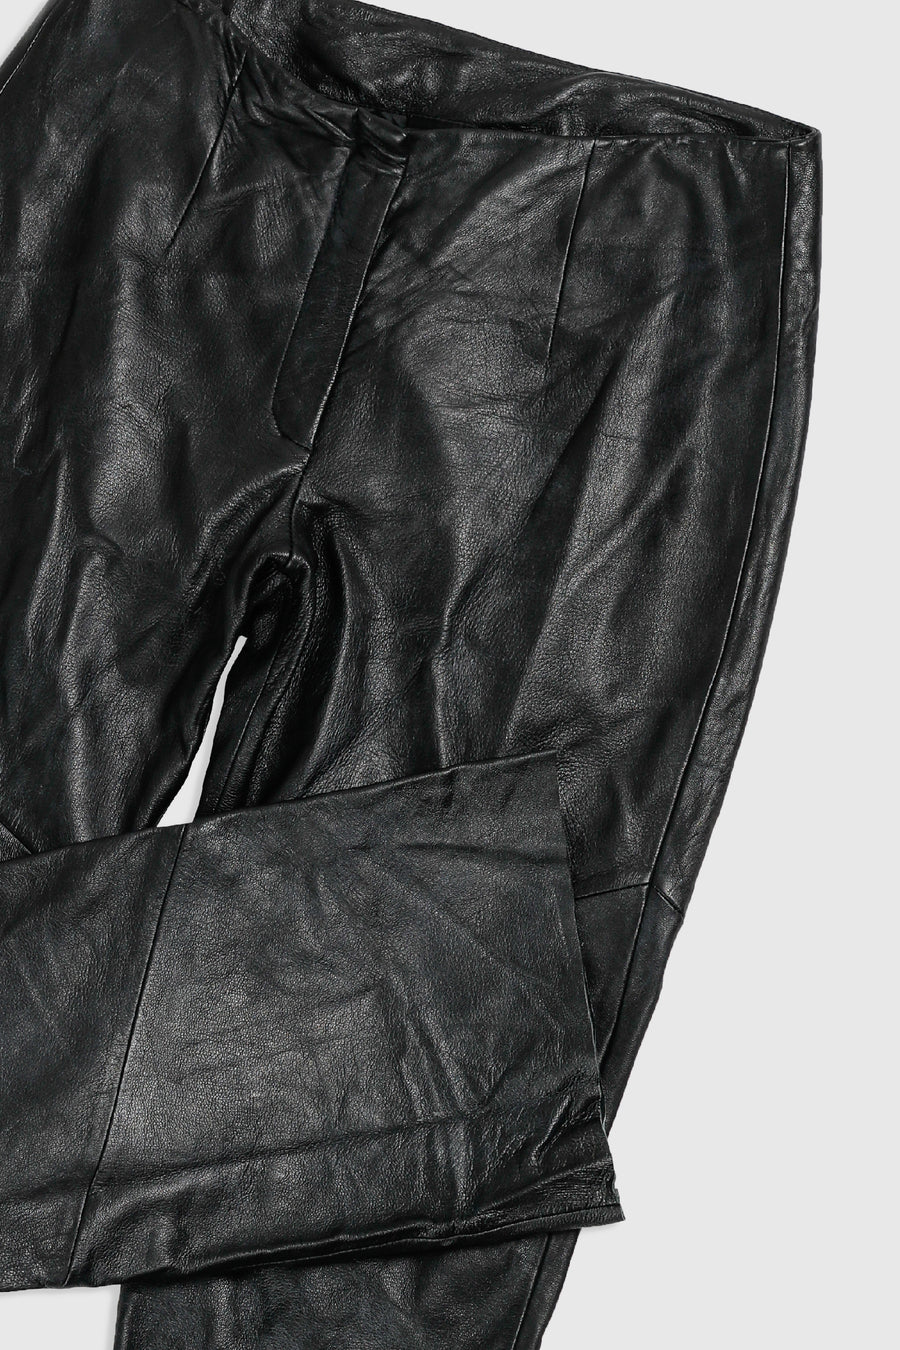 Vintage Leather Pants - Women's M